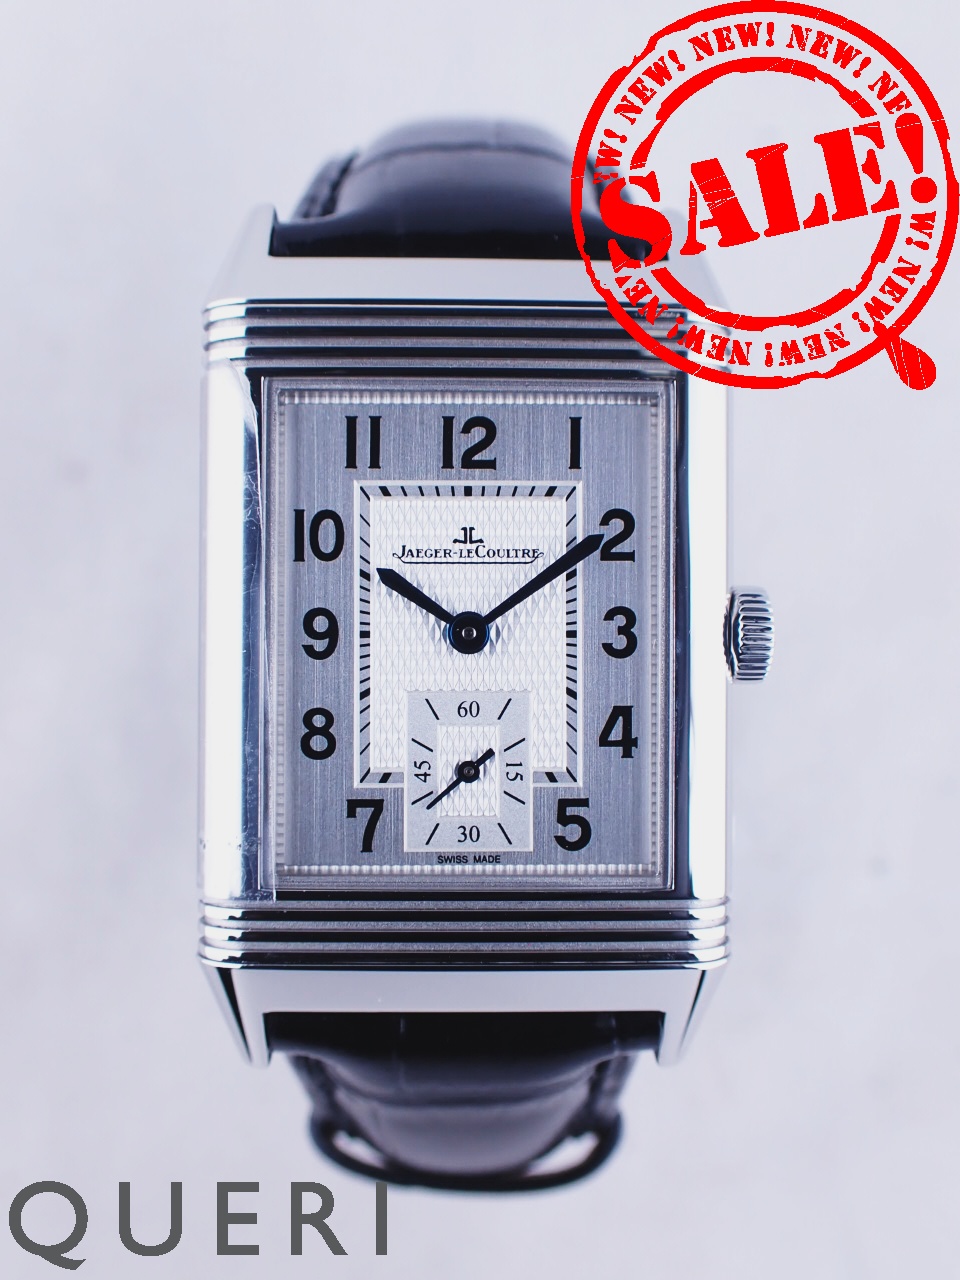 ジャガールクルト(jaegerlecoultre)時計通販・販売|新品 中古 